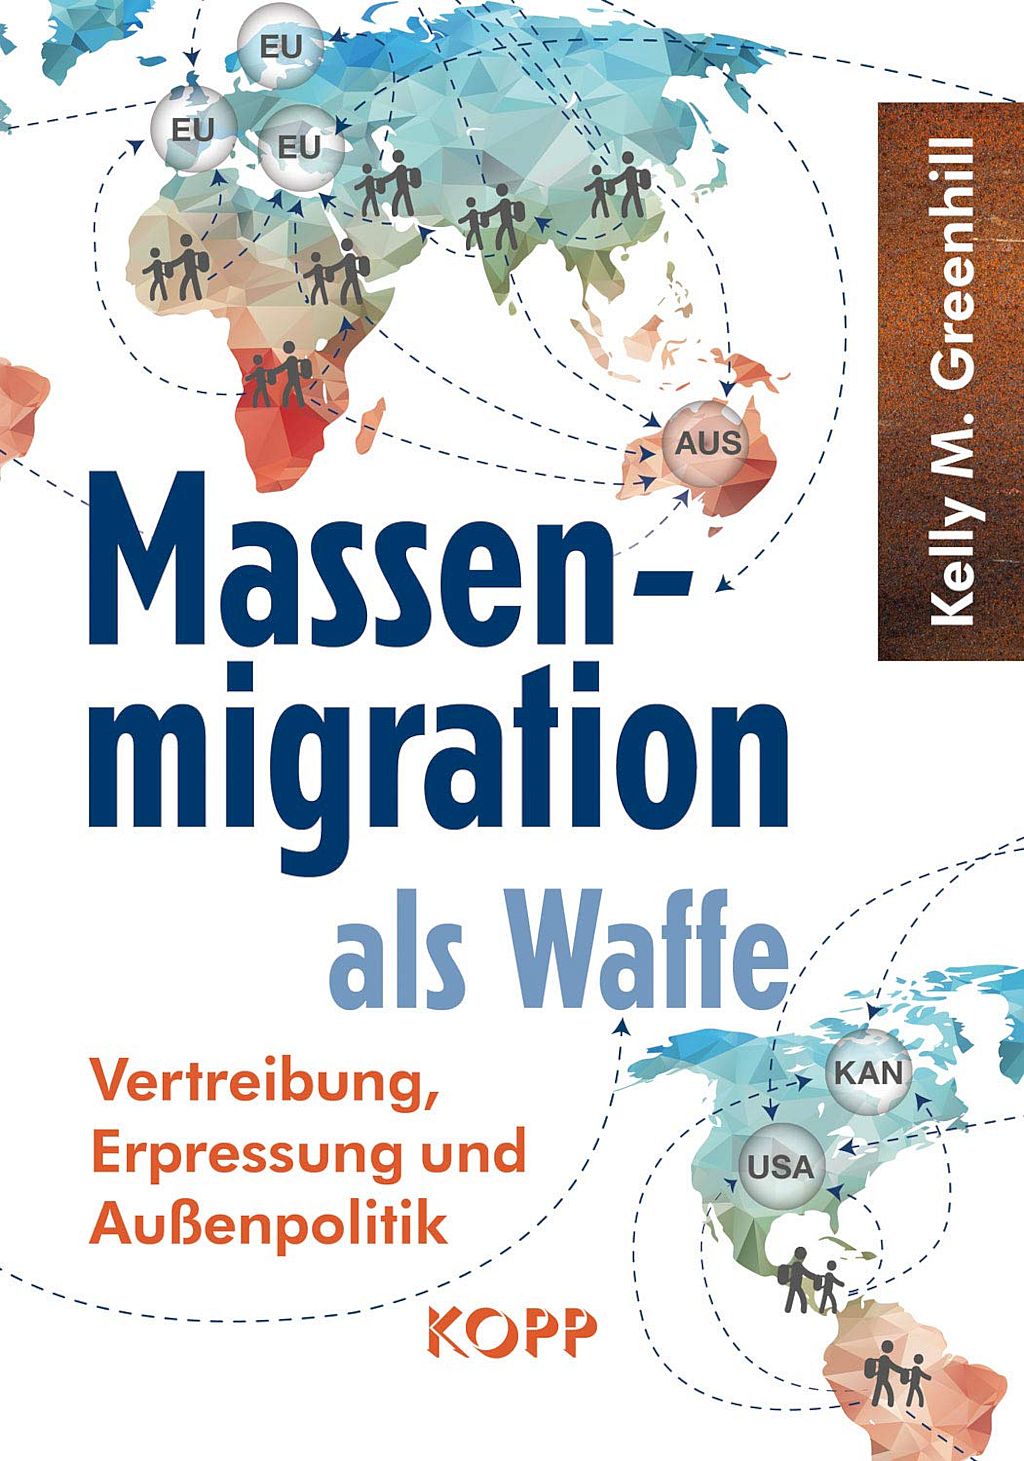 Massenmigration als Waffe: Vertreibung, Erpressung und Aussenpolitik